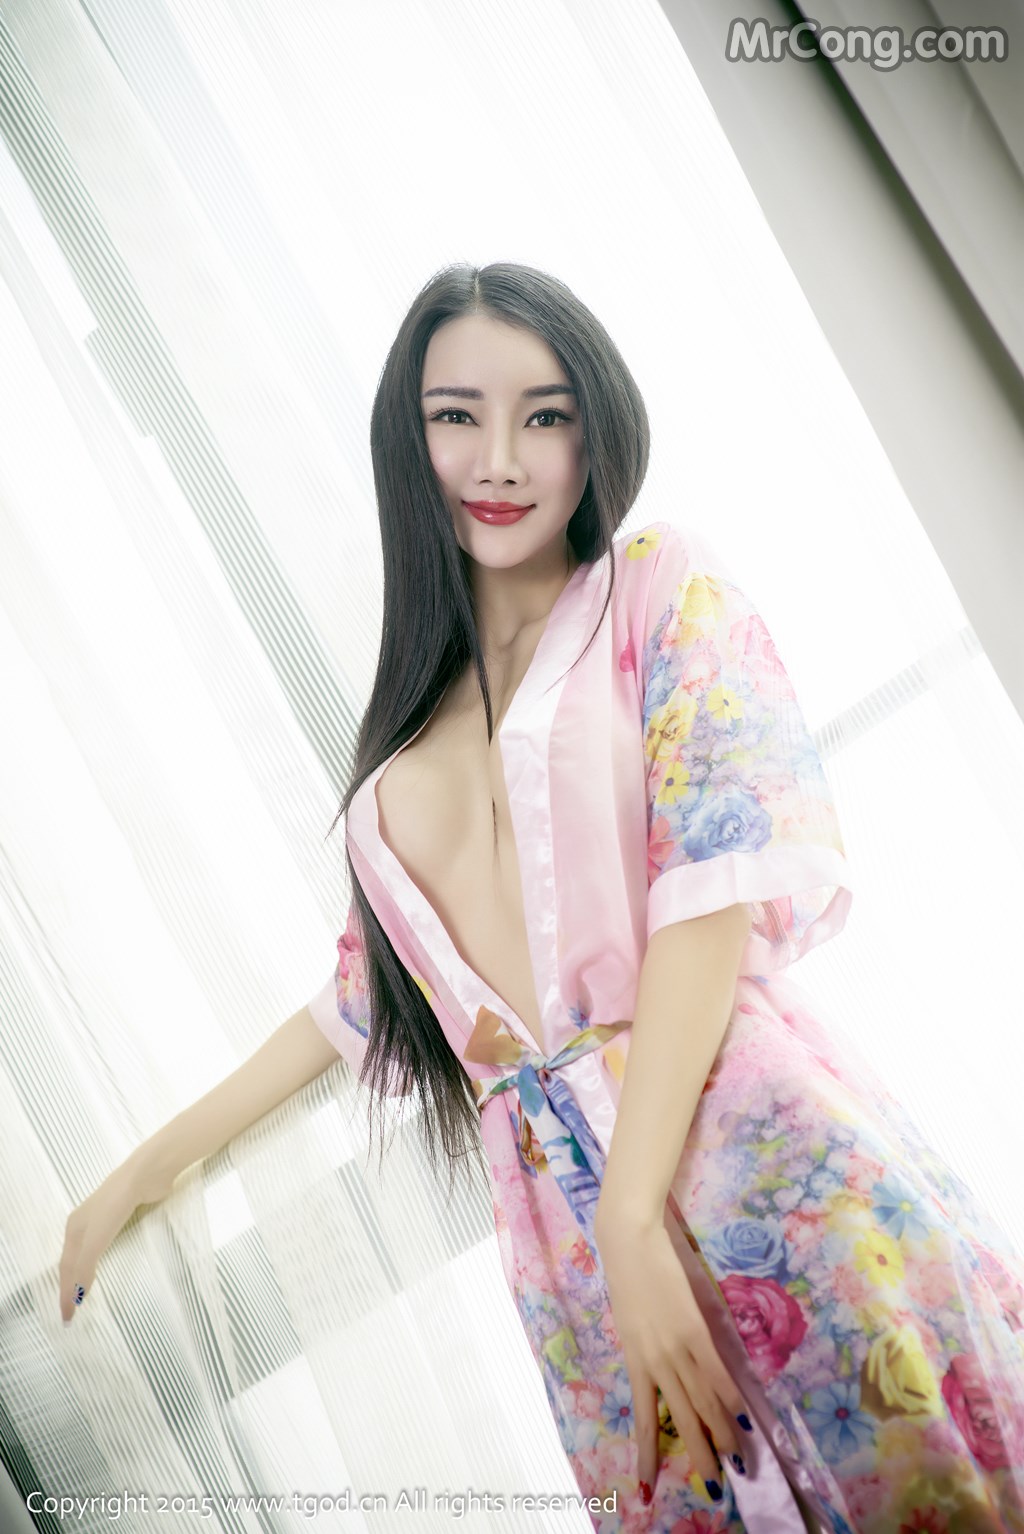 TGOD 2015-12-28: Model Jessie (婕 西 儿) (43 photos)